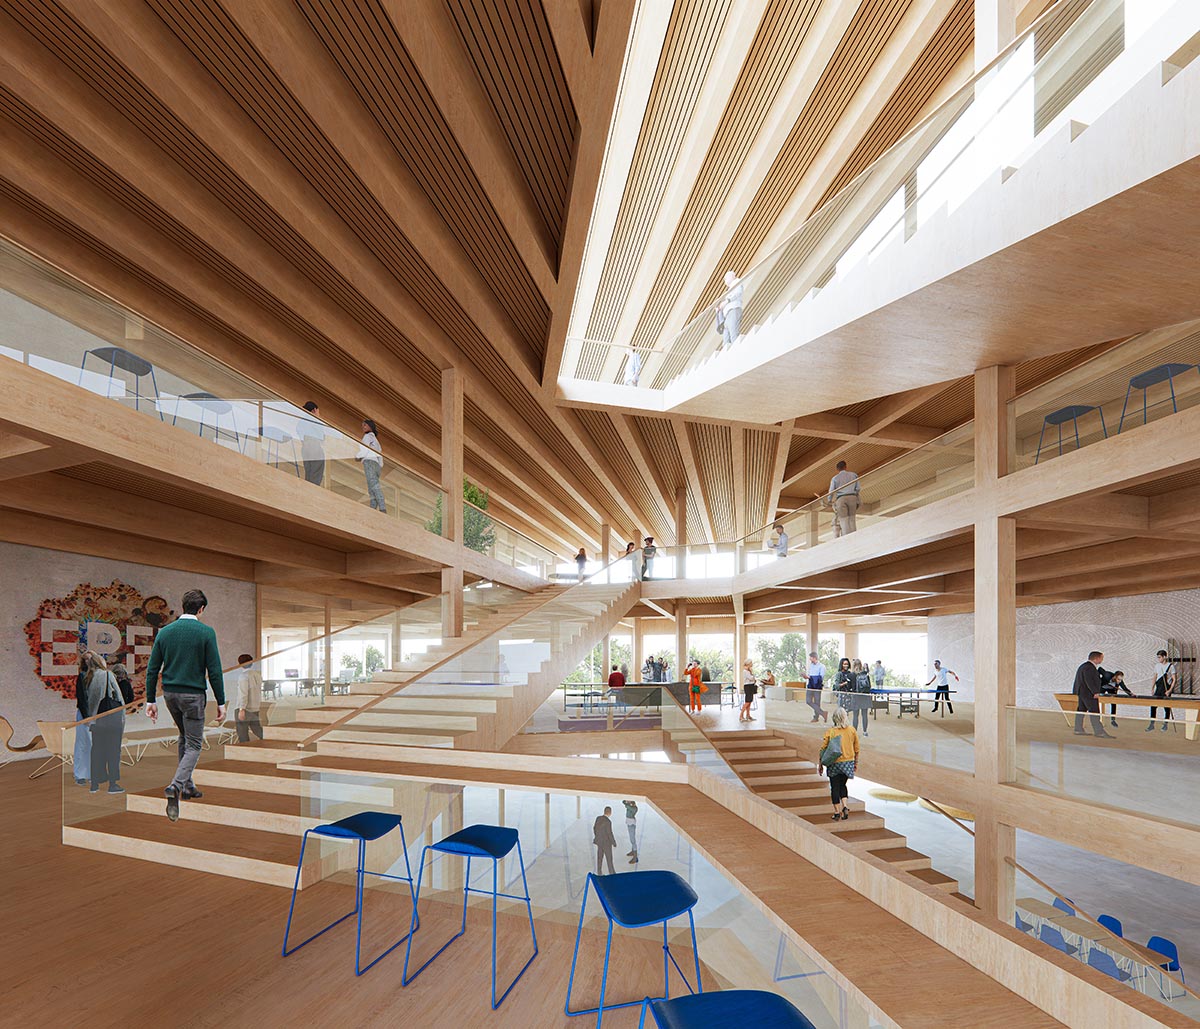 3XN/GXN и IB выиграли конкурс на проектирование нового инновационного кампуса для EPFL в Швейцарии 